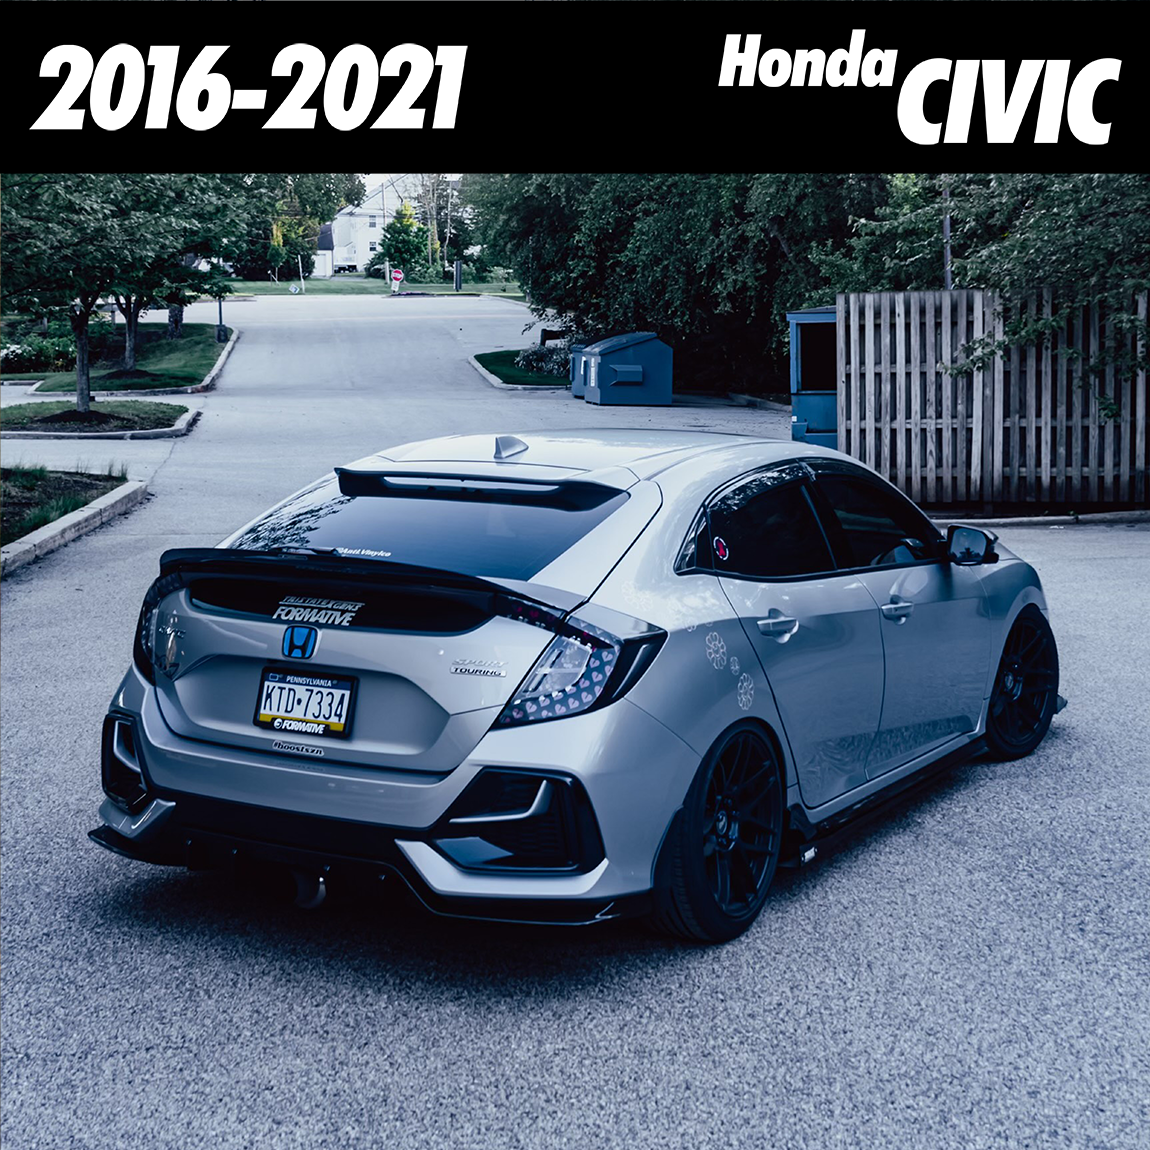 2016-2021 | Honda Civic